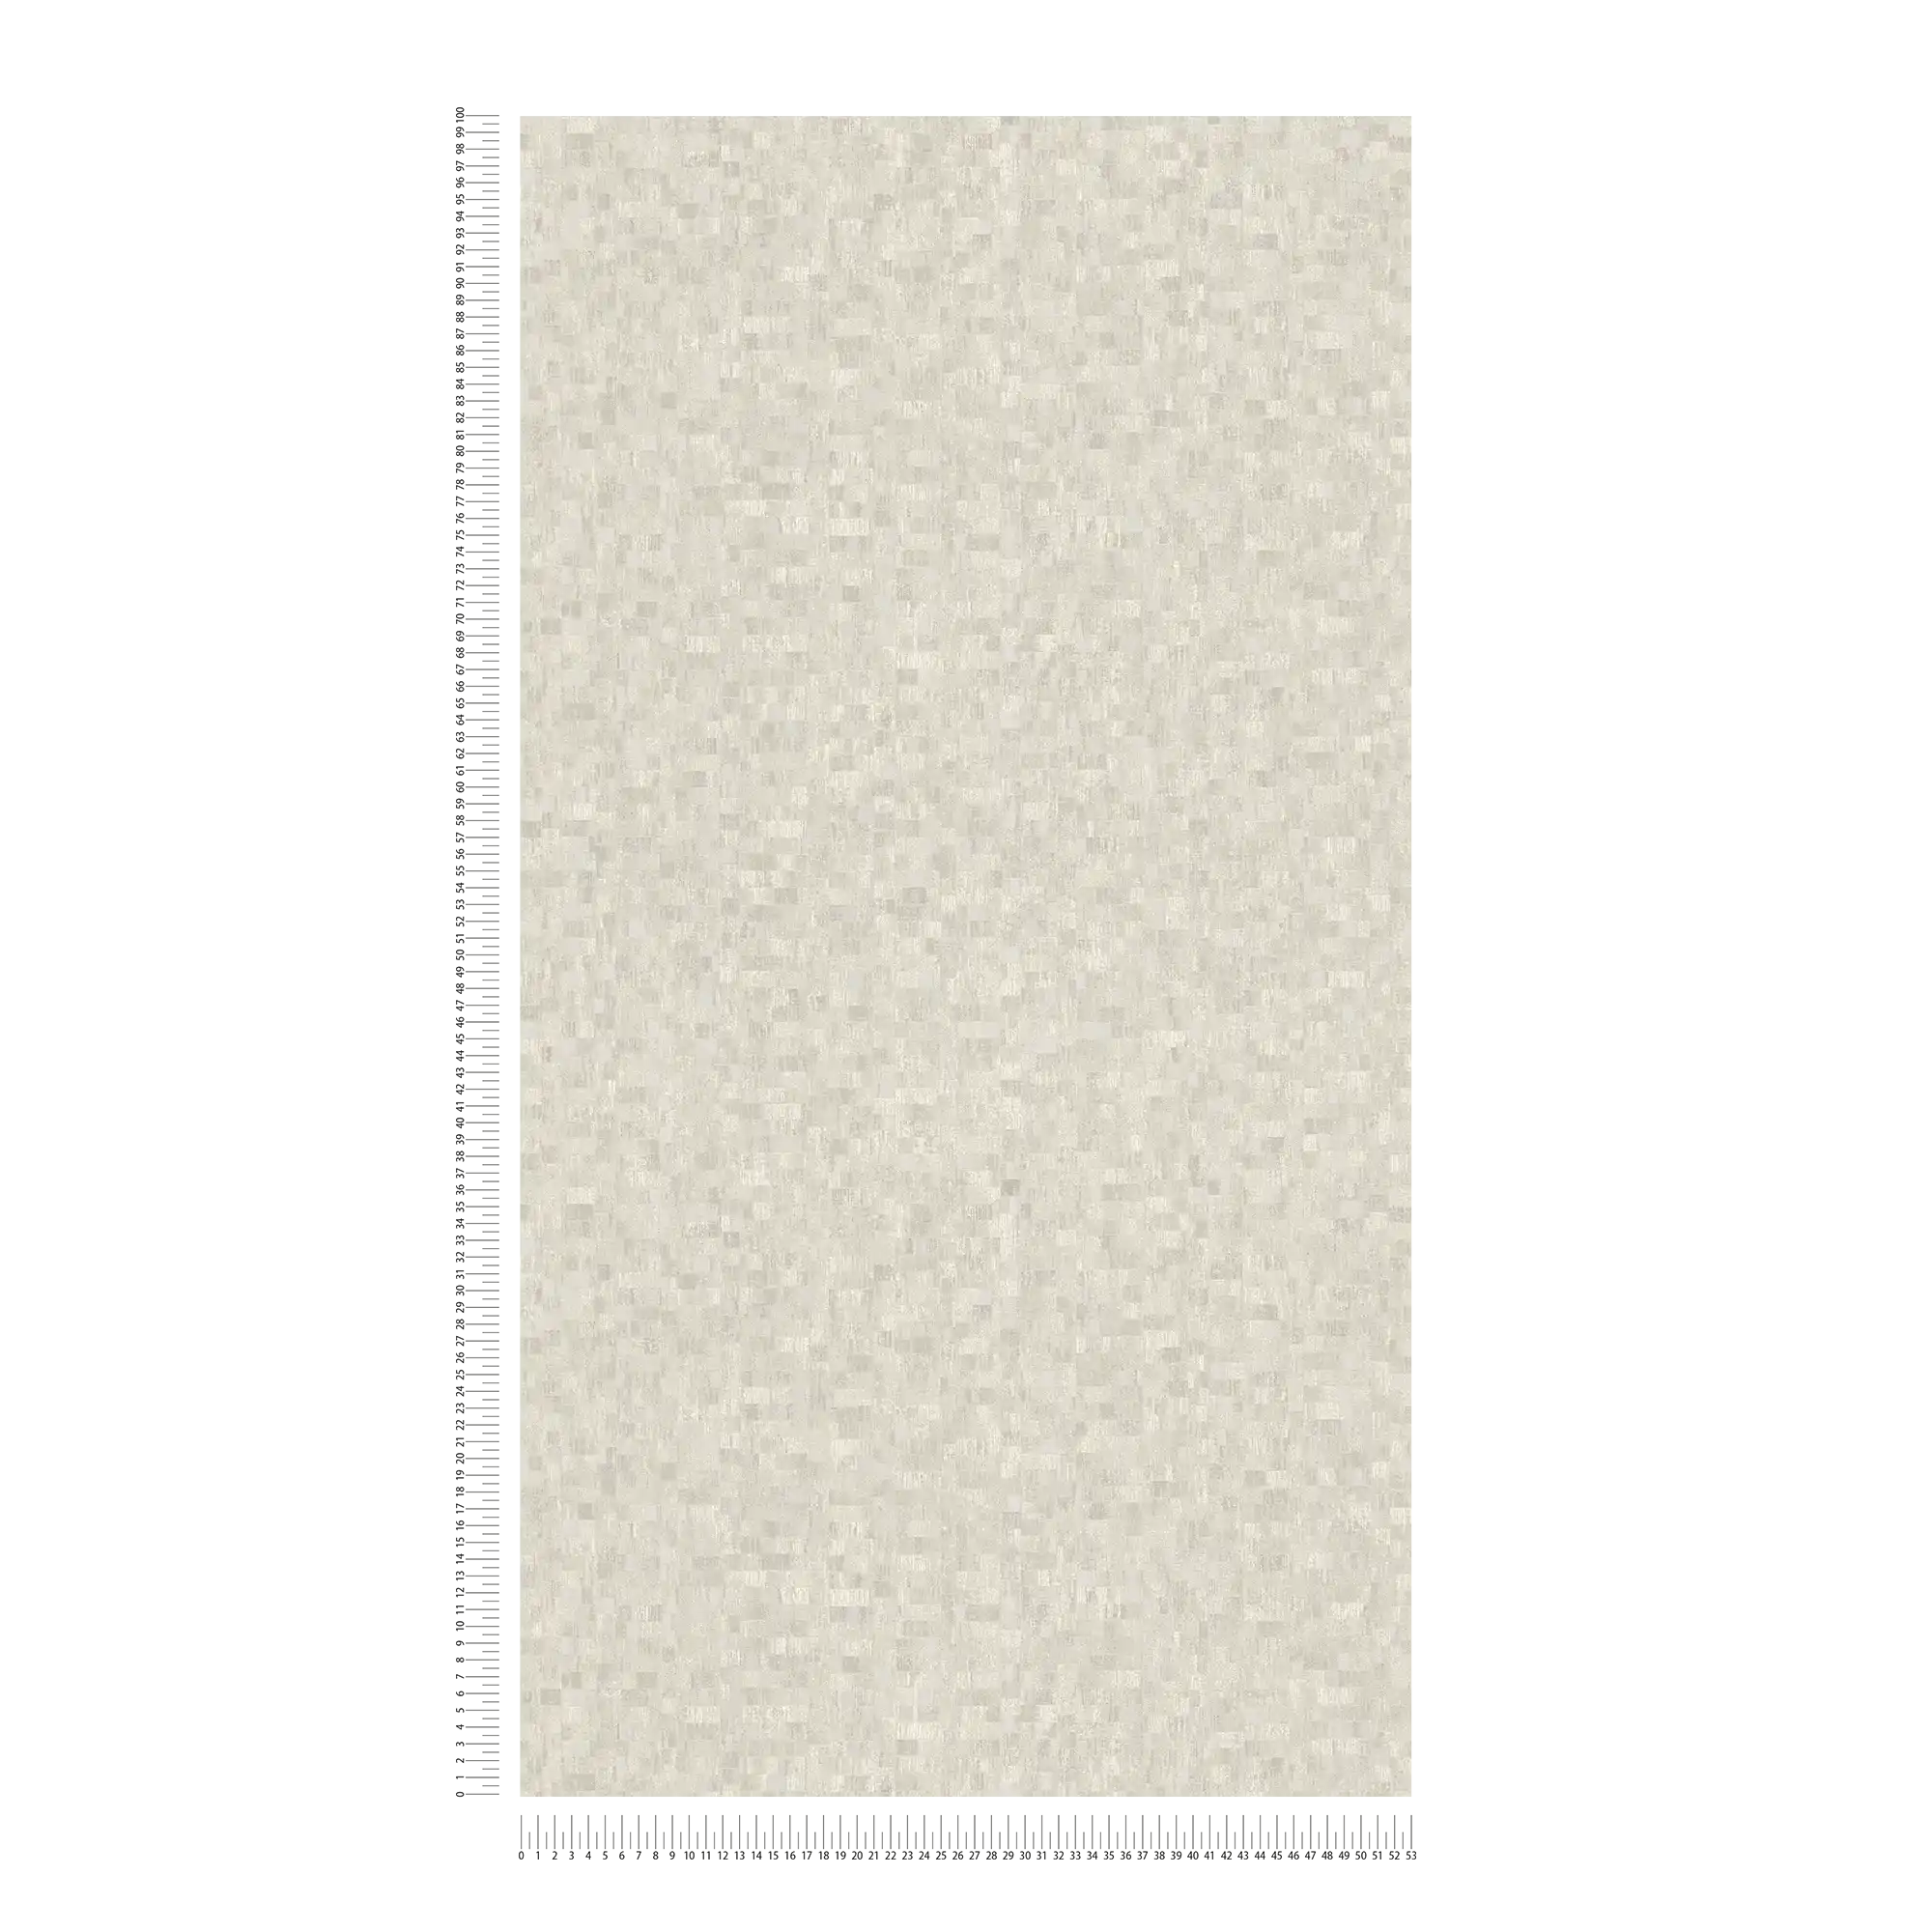             Carta da parati testurizzata con motivo etno in stile mosaico - crema, beige
        